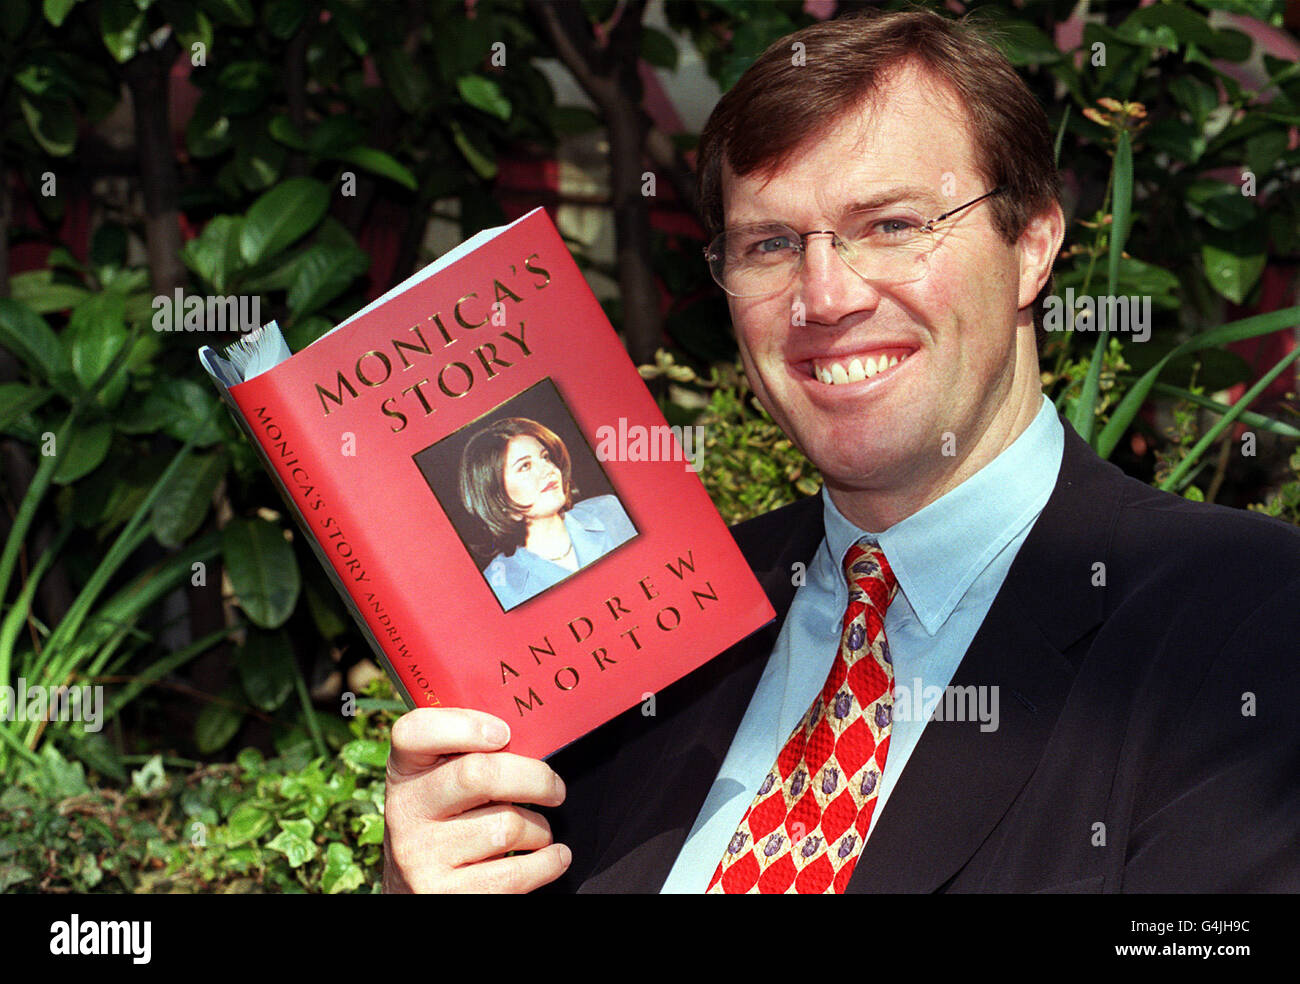 L'auteur Andrew Morton détient une copie du livre « l'histoire de Monica » qu'il a écrit avec l'aide de Monica Lewinsky, célèbre pour son affaire avec le président américain Bill Clinton.Le livre est publié par la presse de Saint-Martin. Banque D'Images